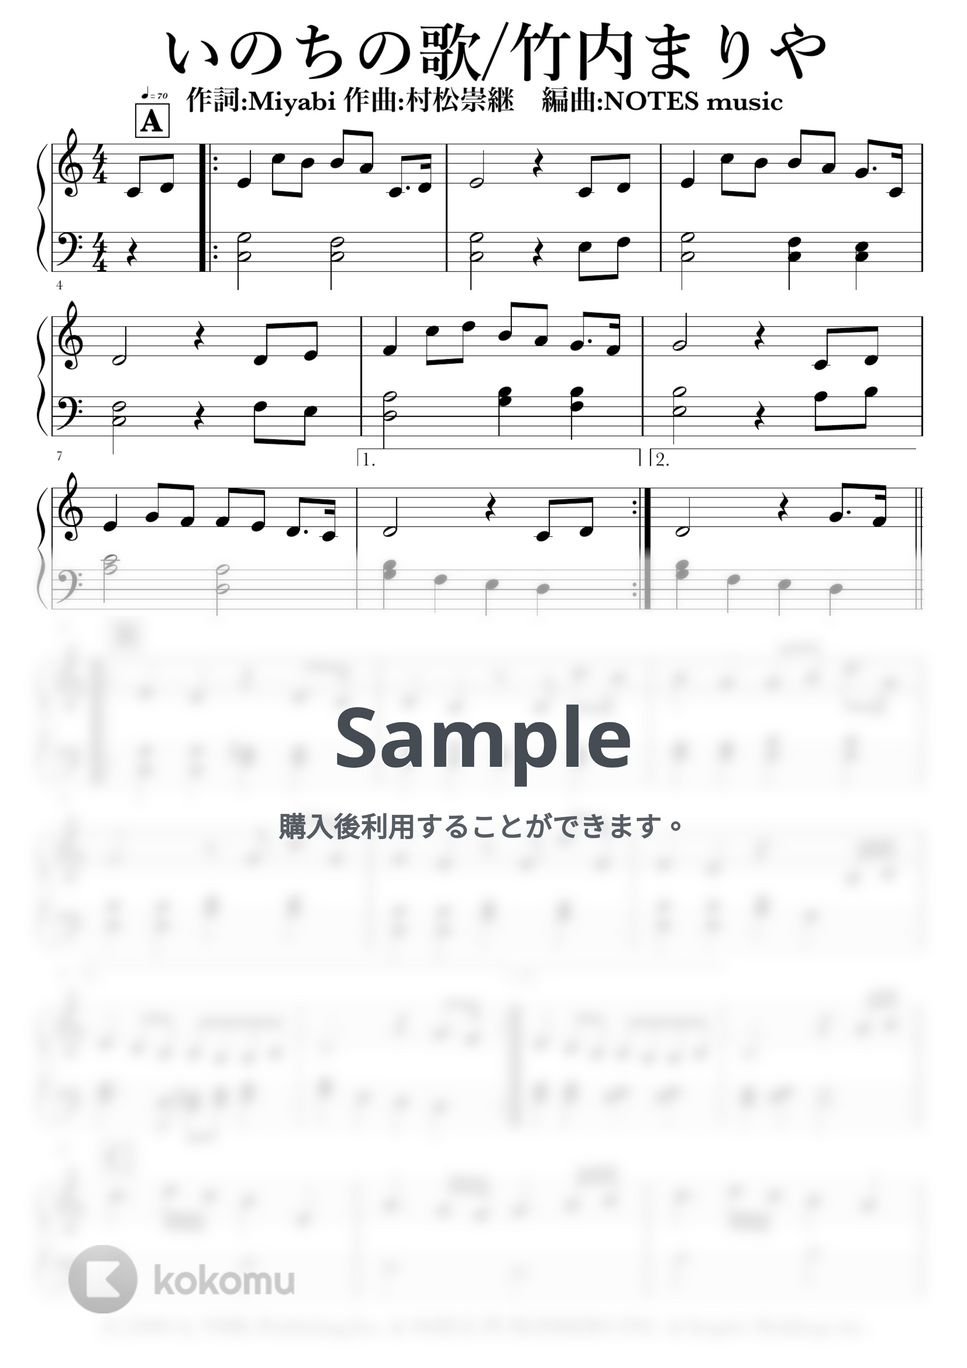 竹内まりや - いのちの歌 by NOTES music